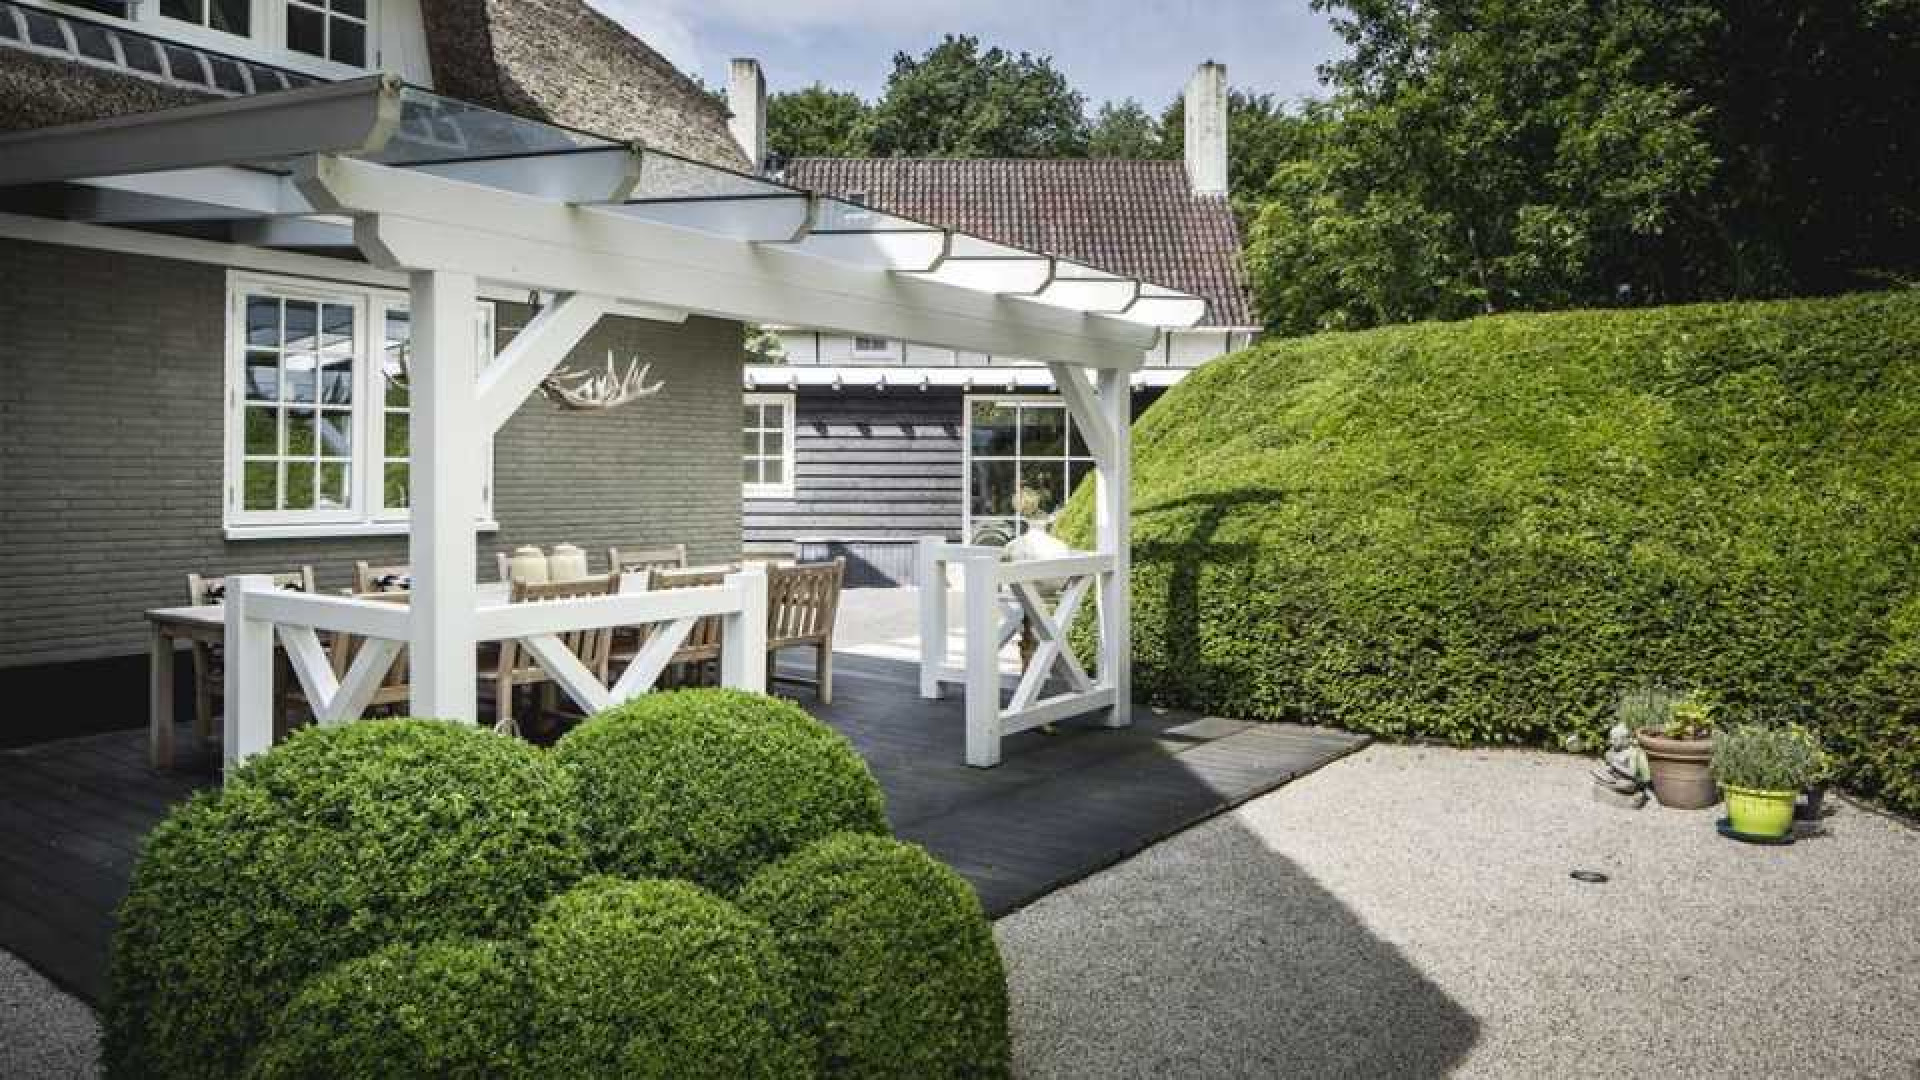 Winston Gerschtanowitz geeft korting op zijn luxe villa. Zie foto's